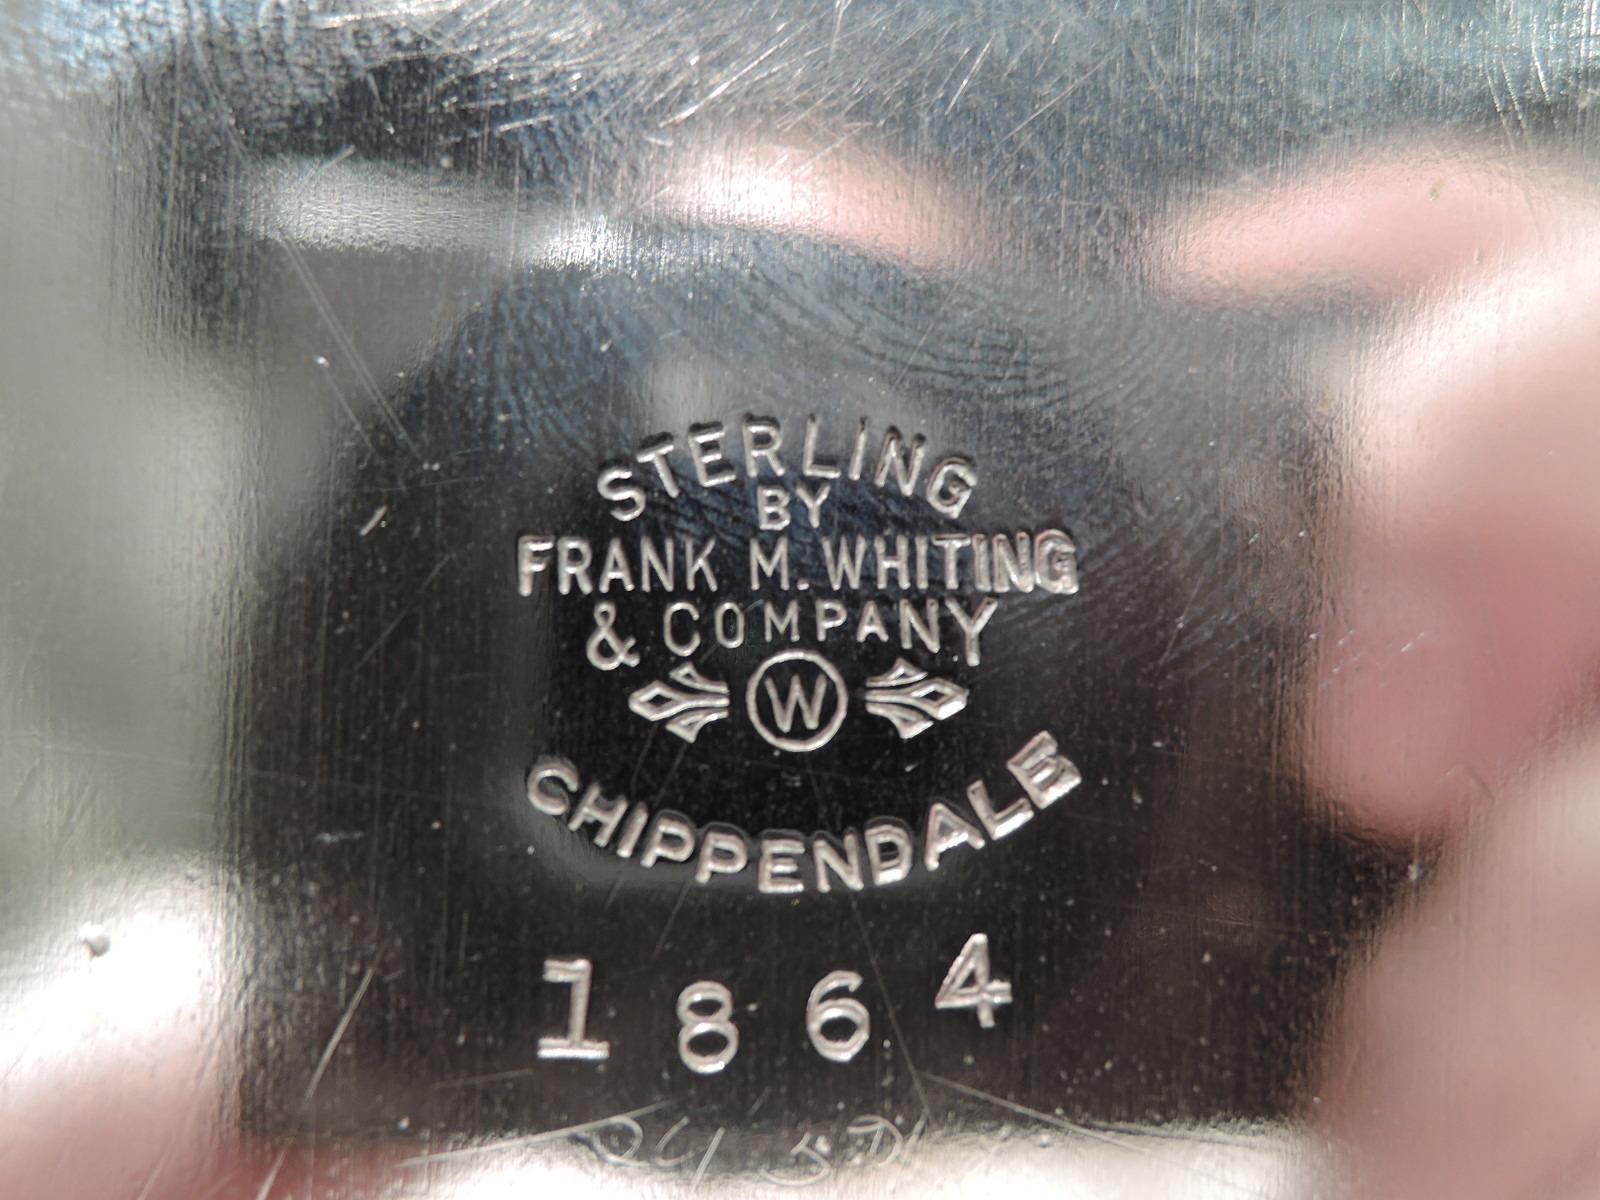 Américain Plateau Chippendale en argent sterling géorgien piqué de Frank M. Whiting en vente